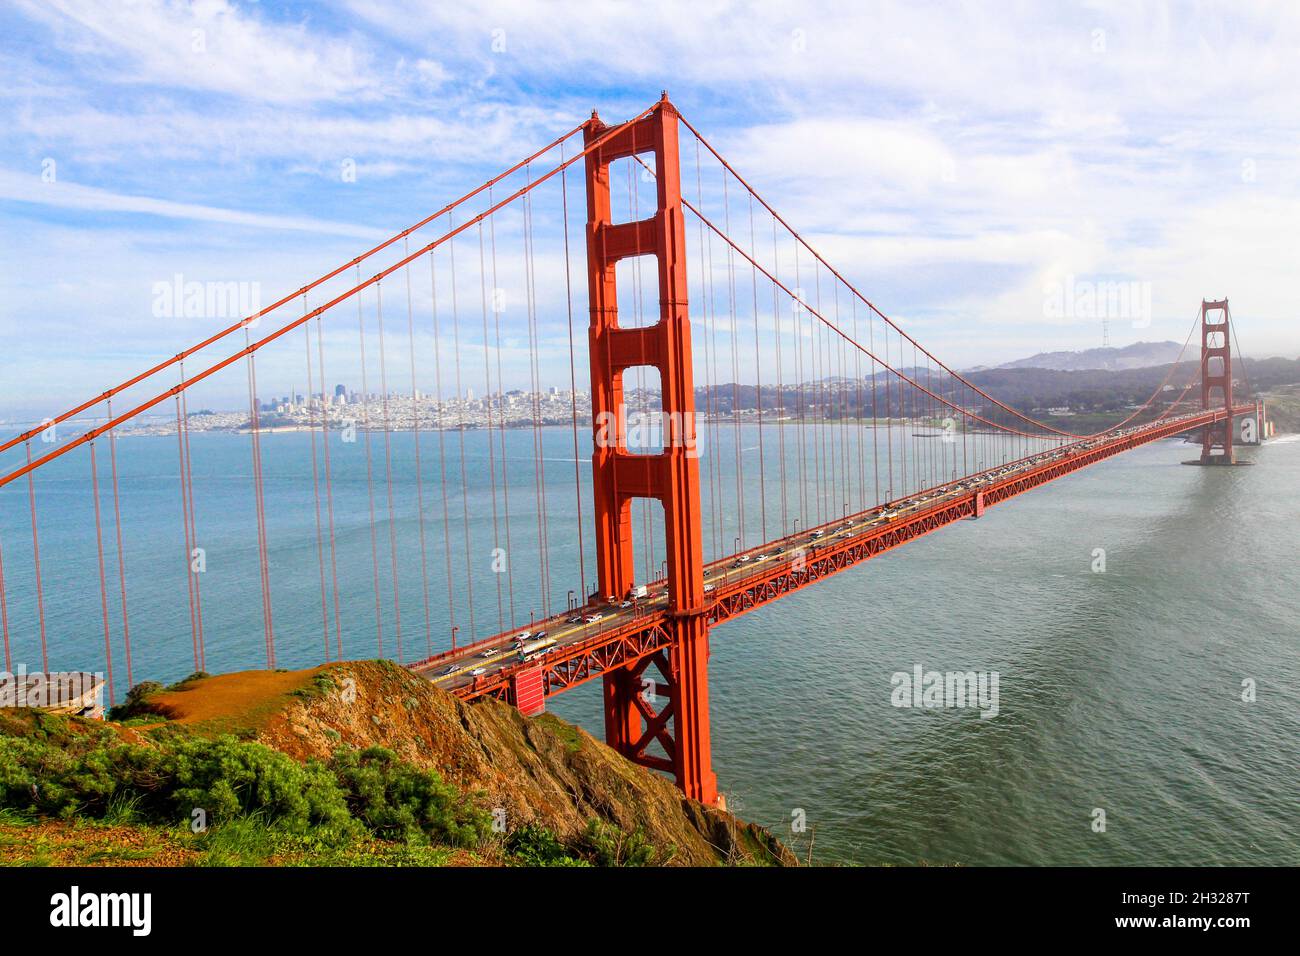 San Francisco California USA, Golden Gate Bridge Stock Photo